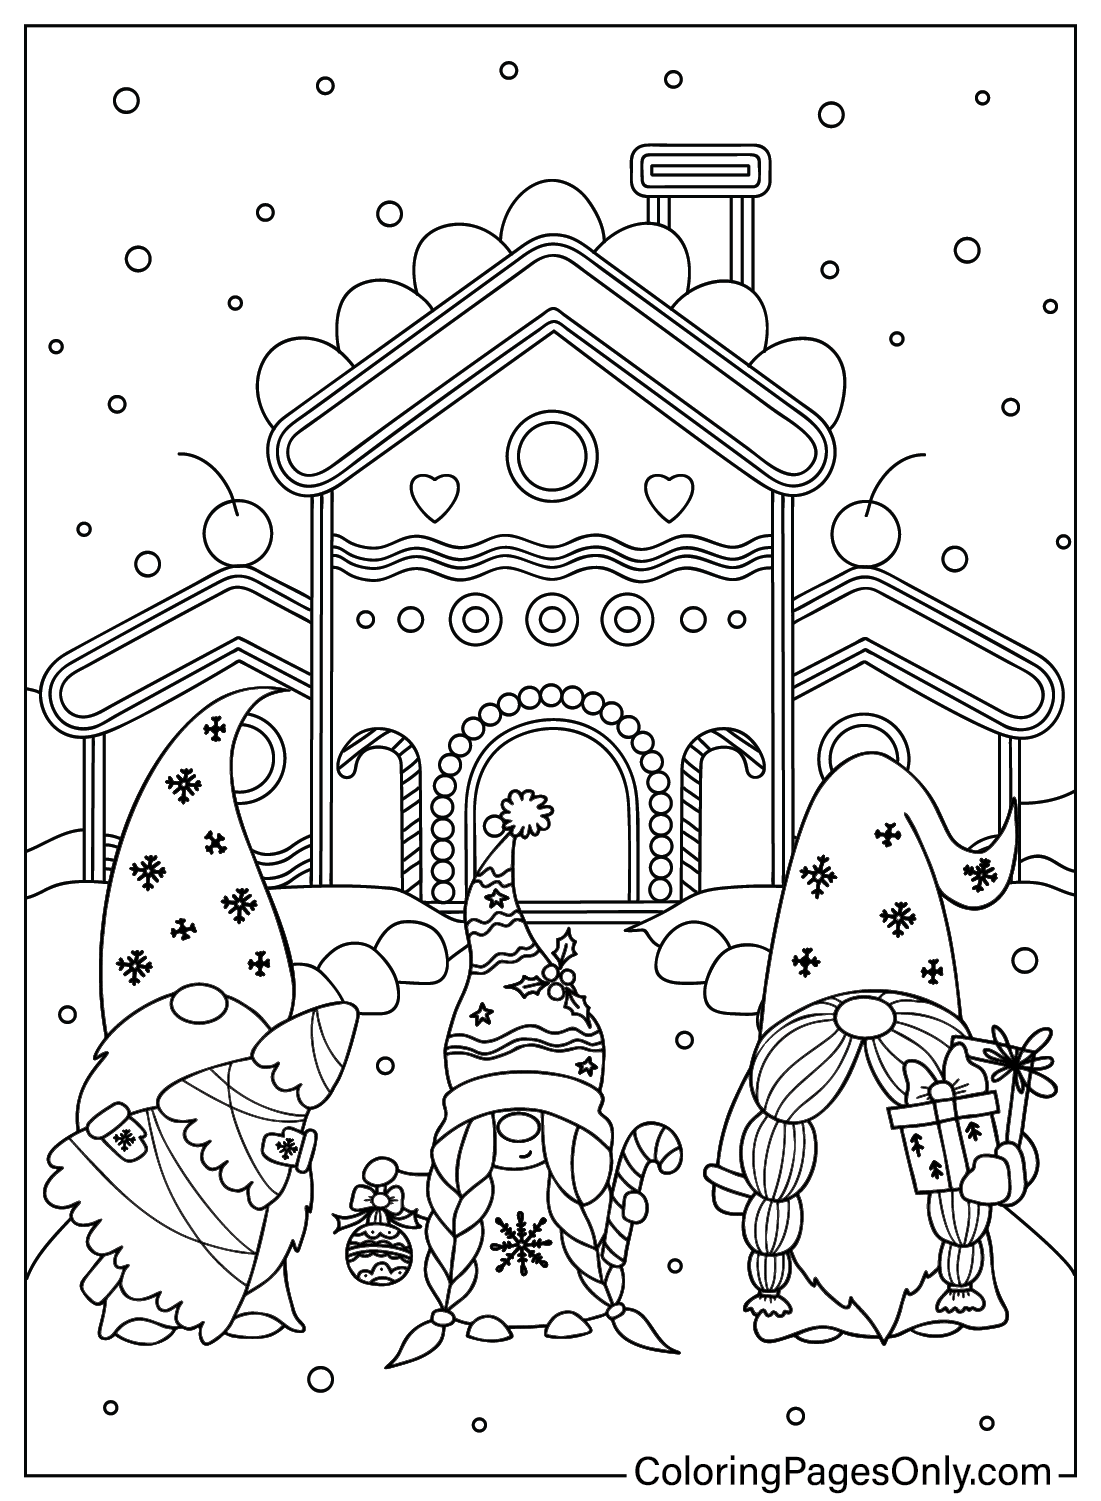 Página para colorear de Navidad de Gnome gratis de Gnome